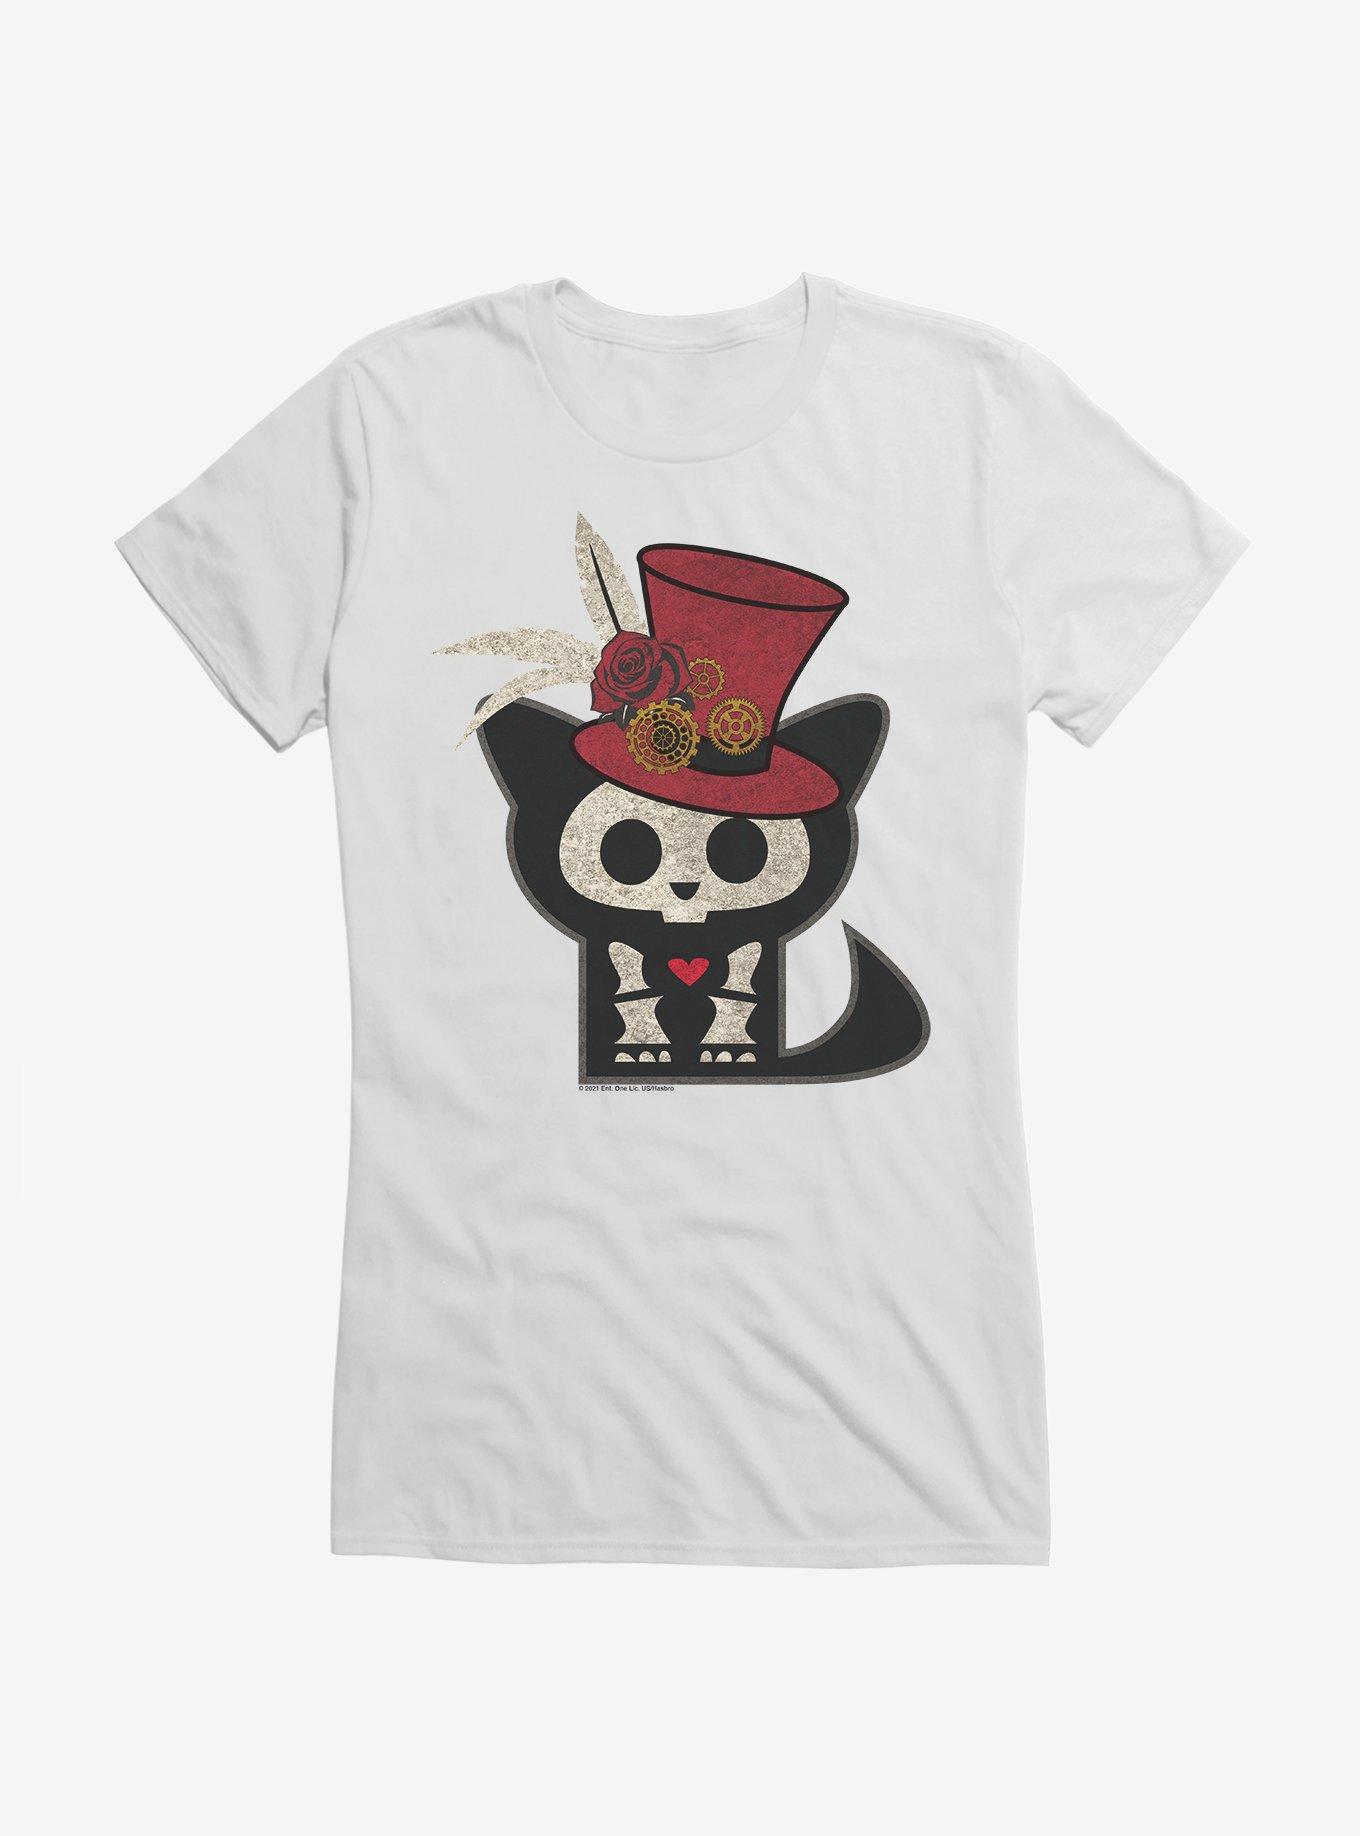 Skelanimals Kit Top Hat Girls T-Shirt